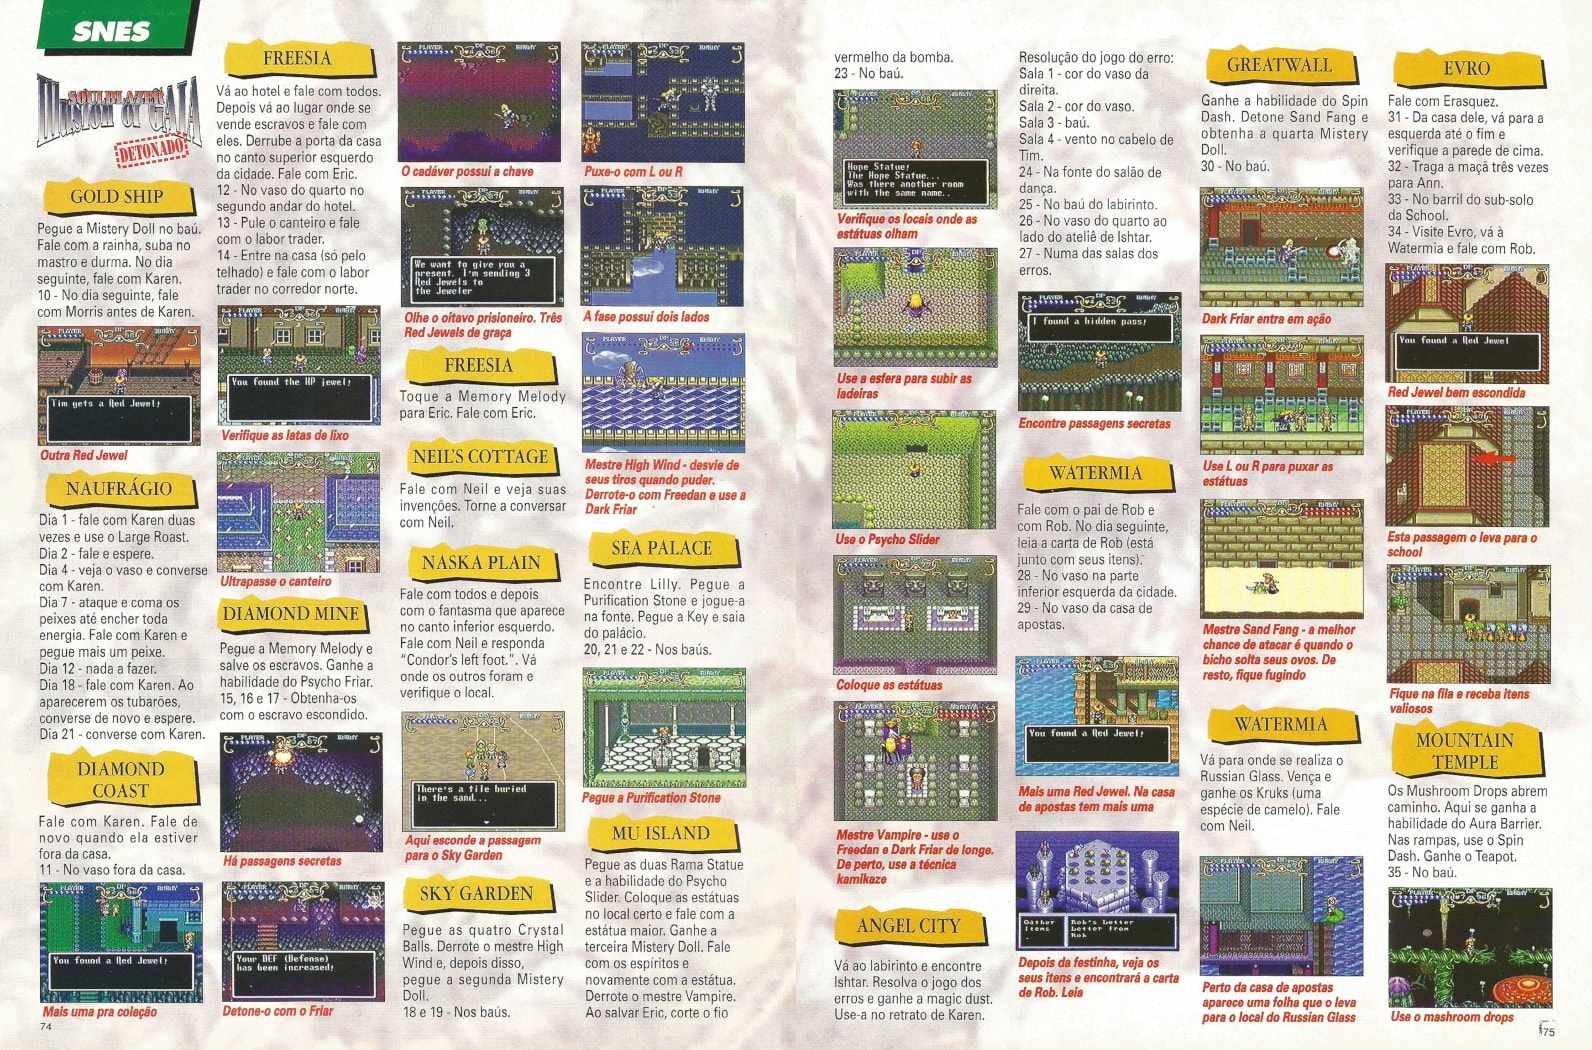 Super Gamepower Revista 85 - Detonado Unreal Pokemon Zelda - Sebo e  Gibiteca Tunel do Tempo